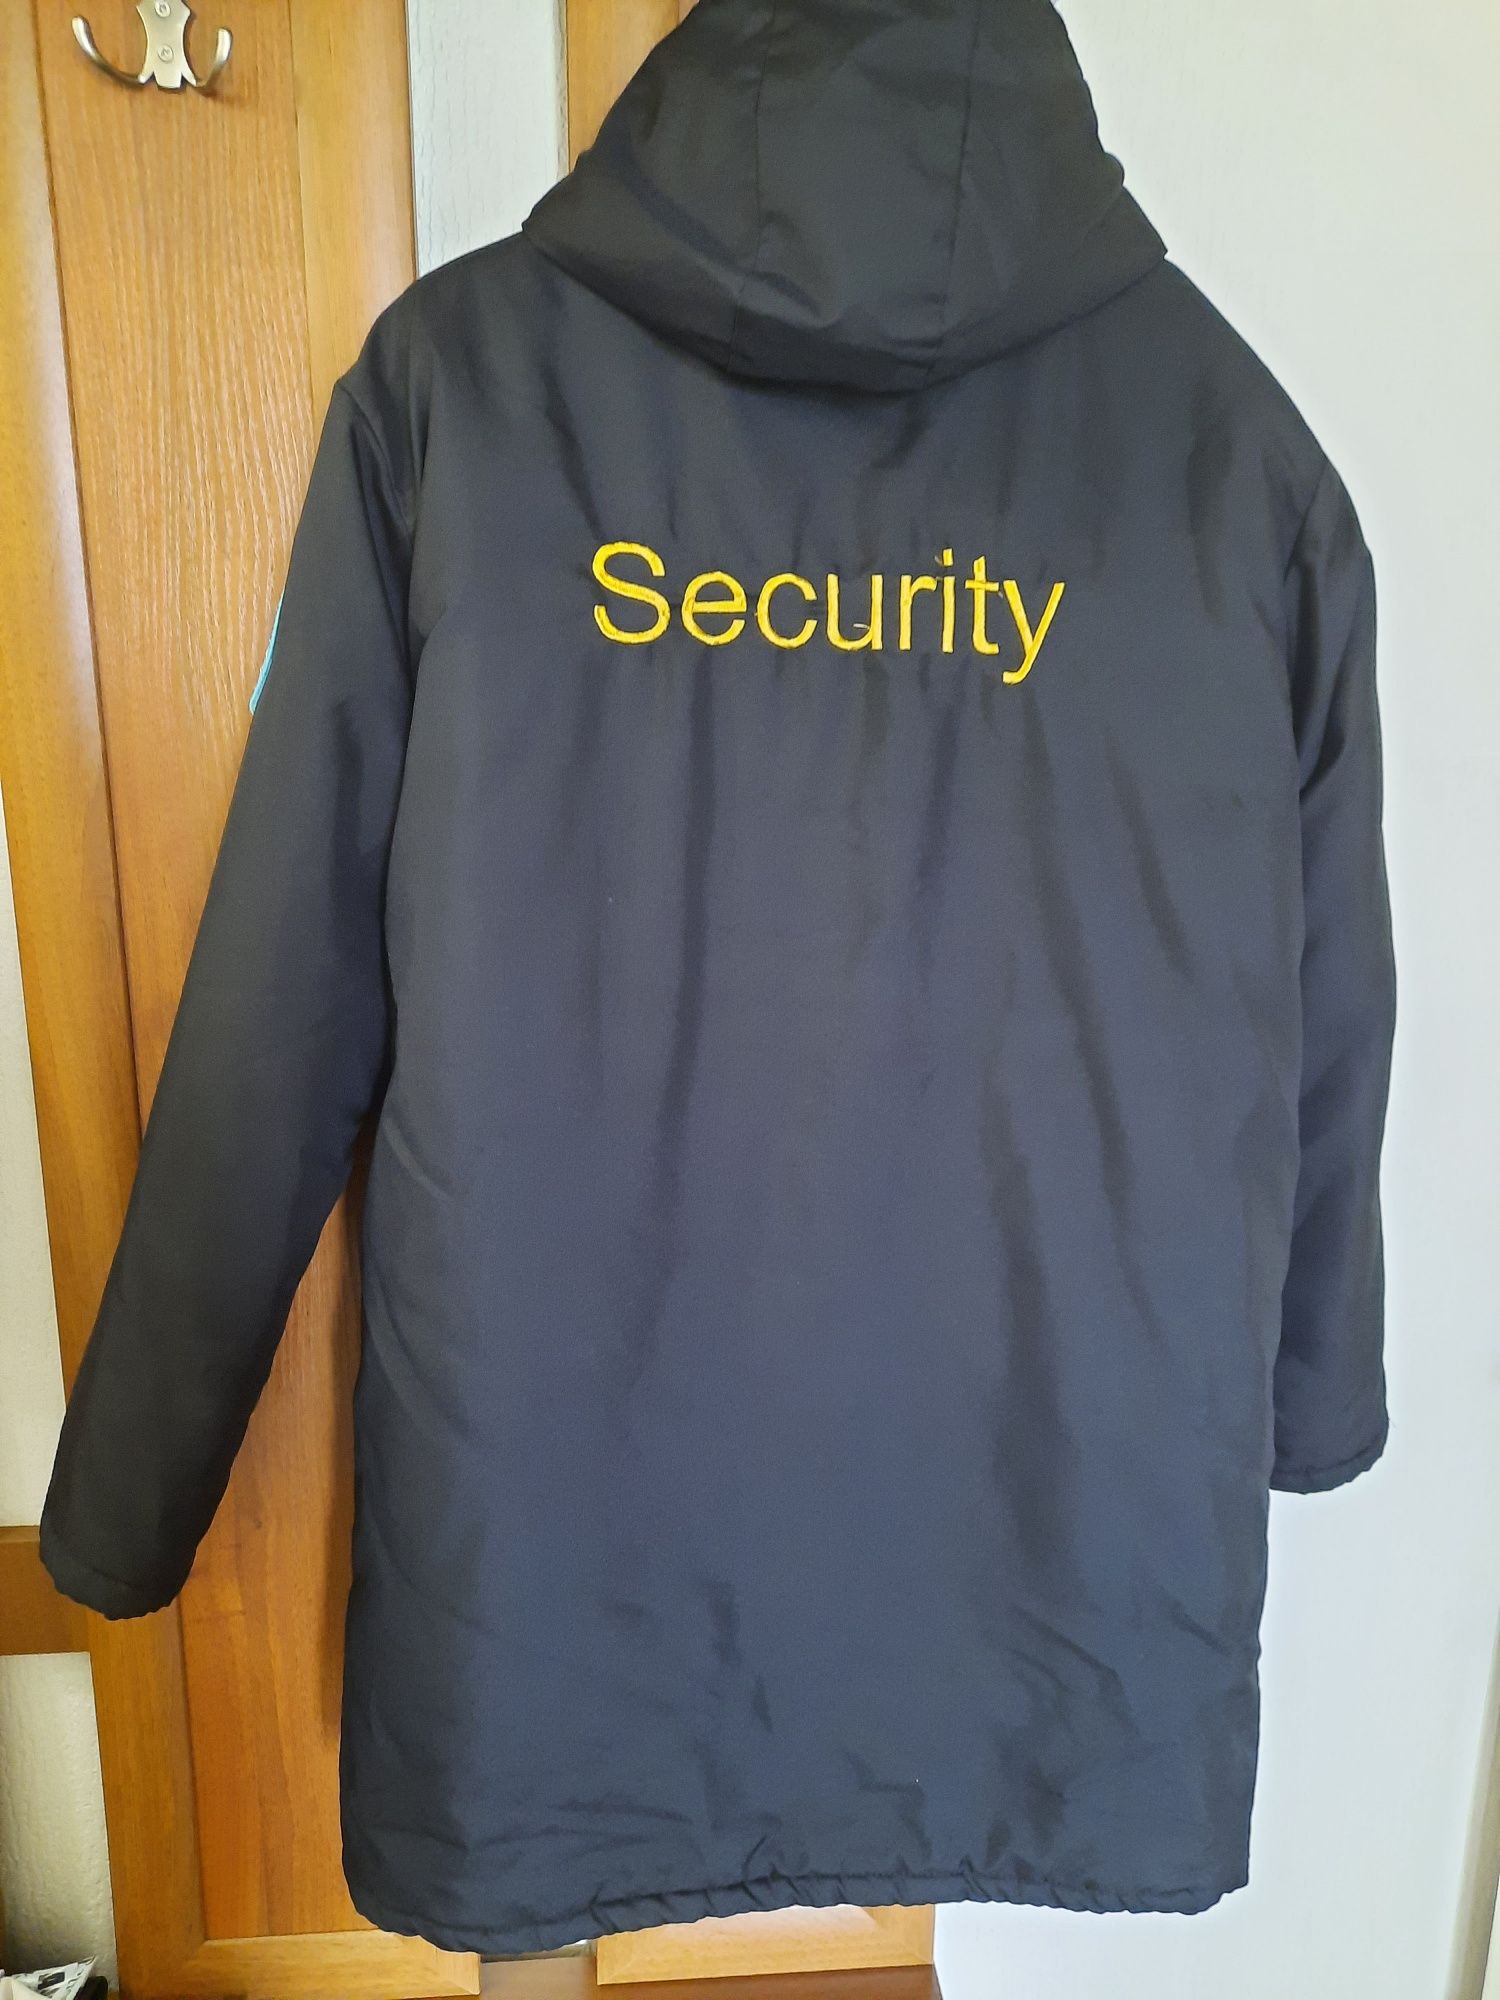 Продаю новую зимнию форму охранника "Security".